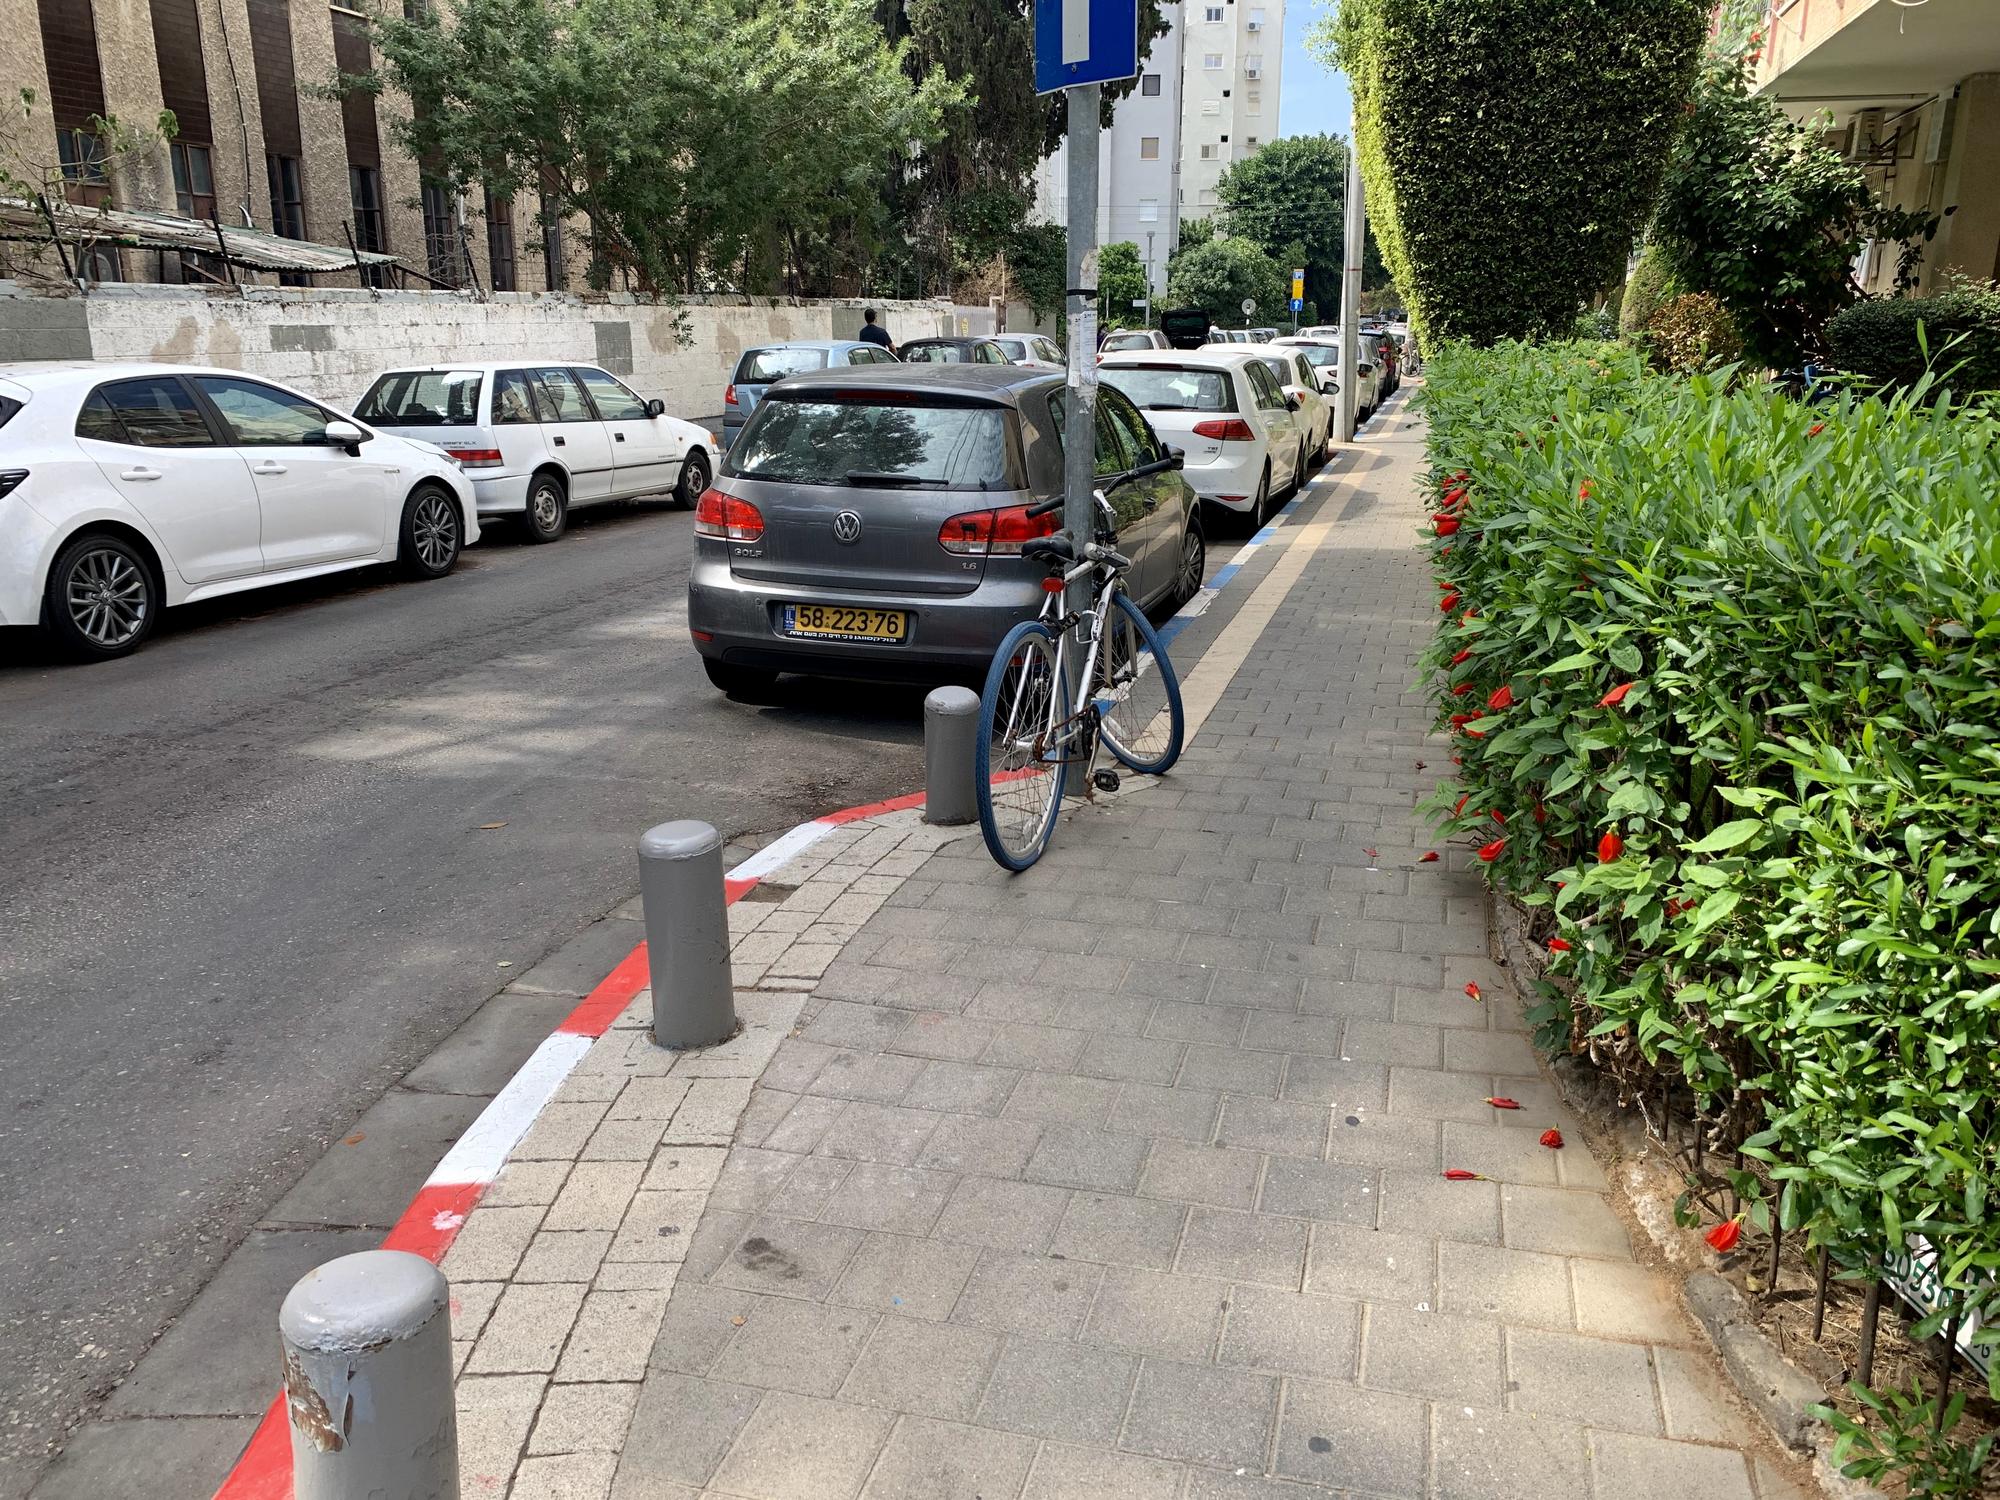 🇮🇱 Tel Aviv, Israel, October 2019.